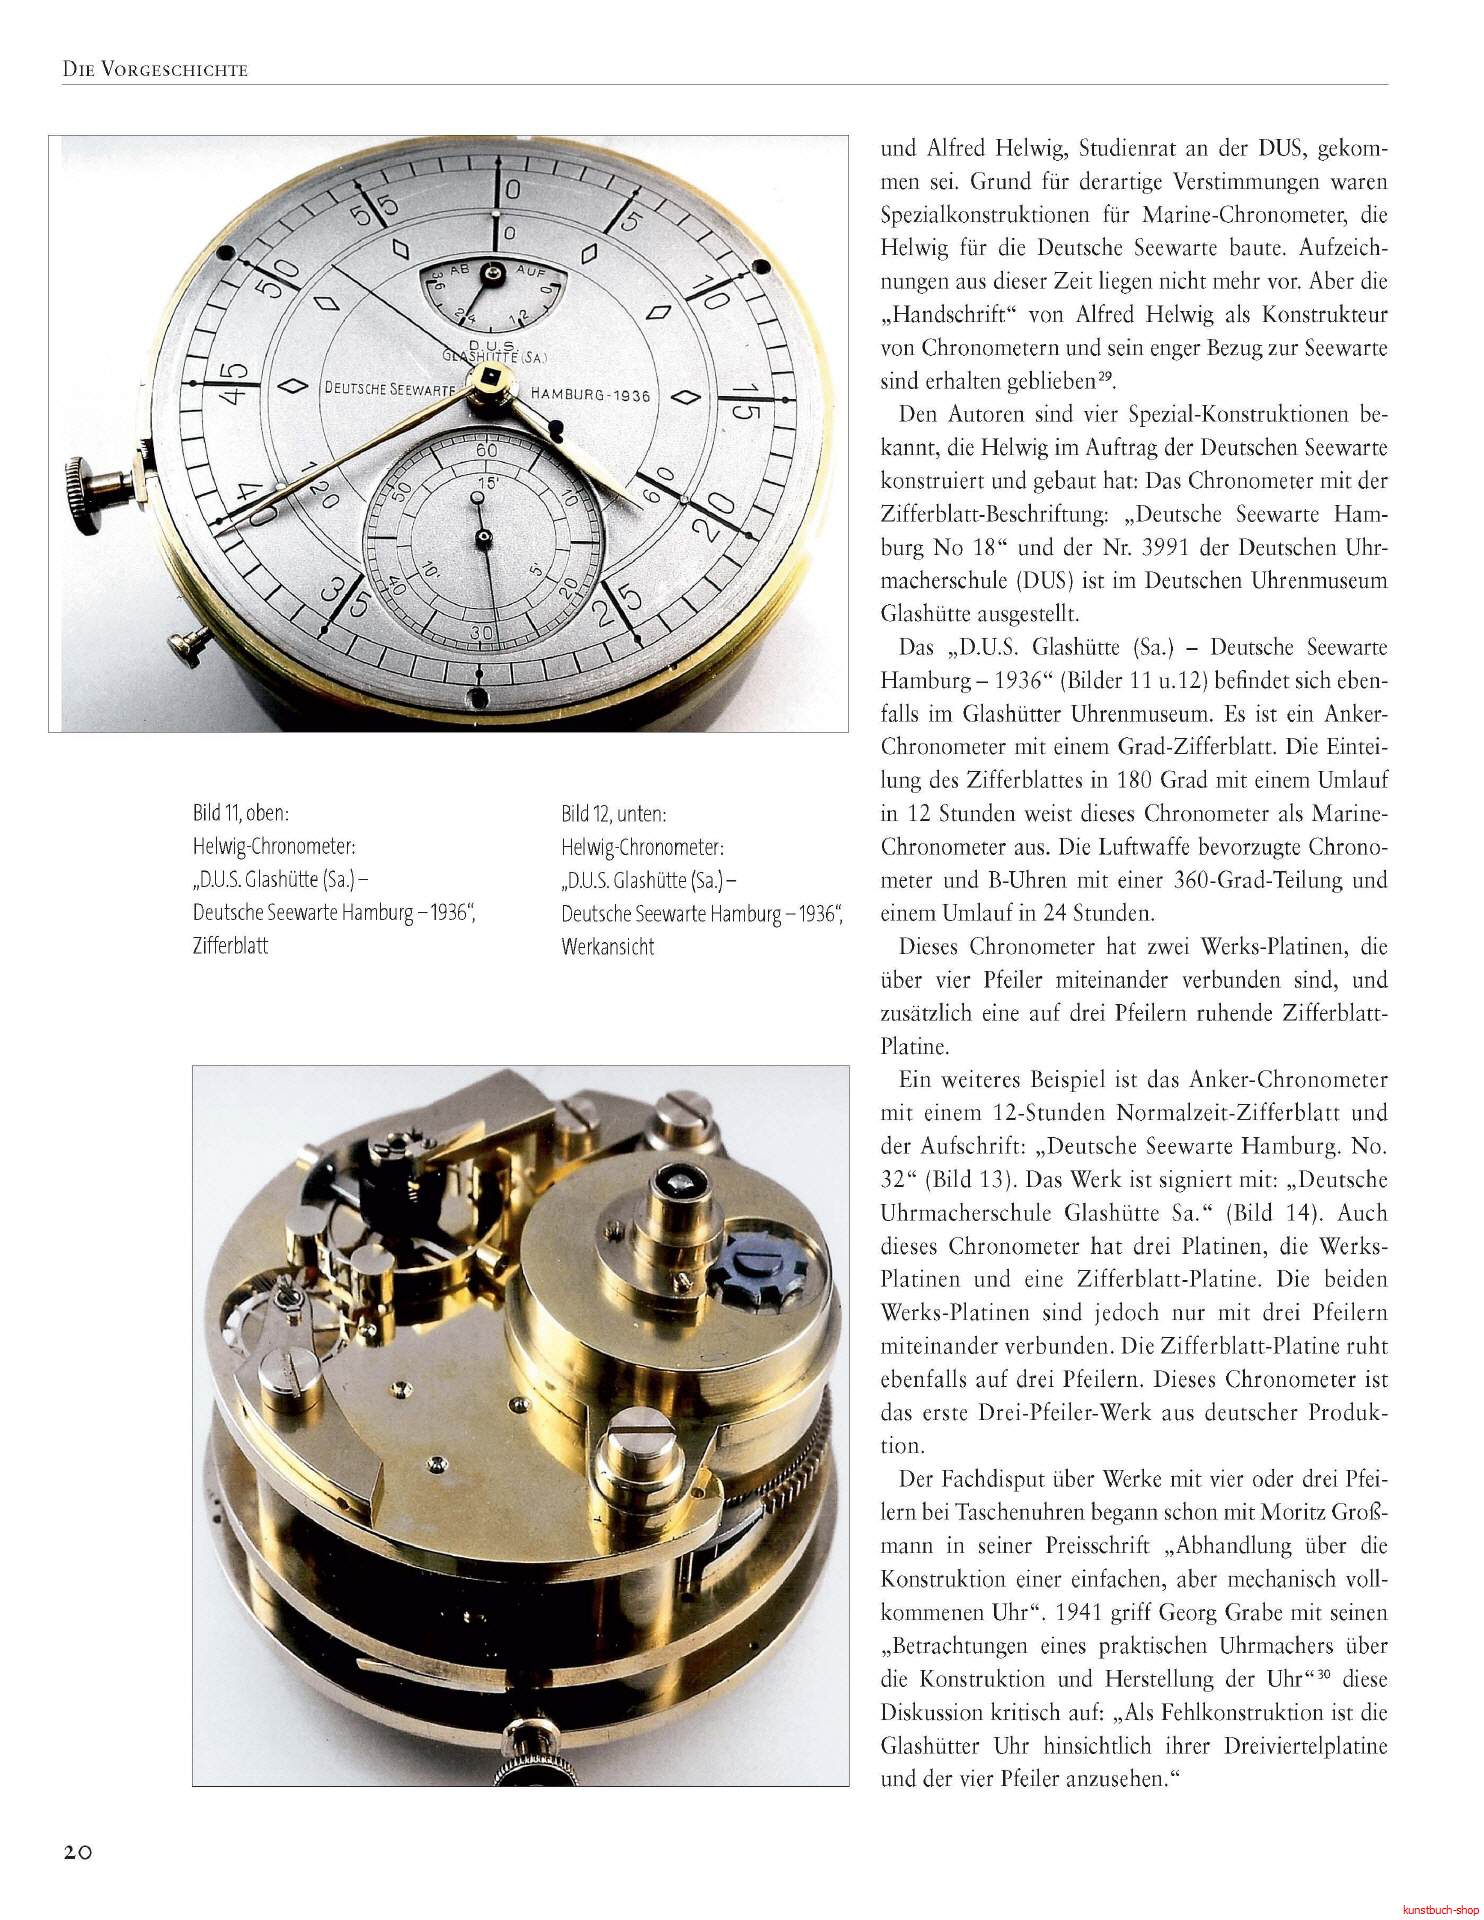 Das Deutsche Einheits-Chronometer